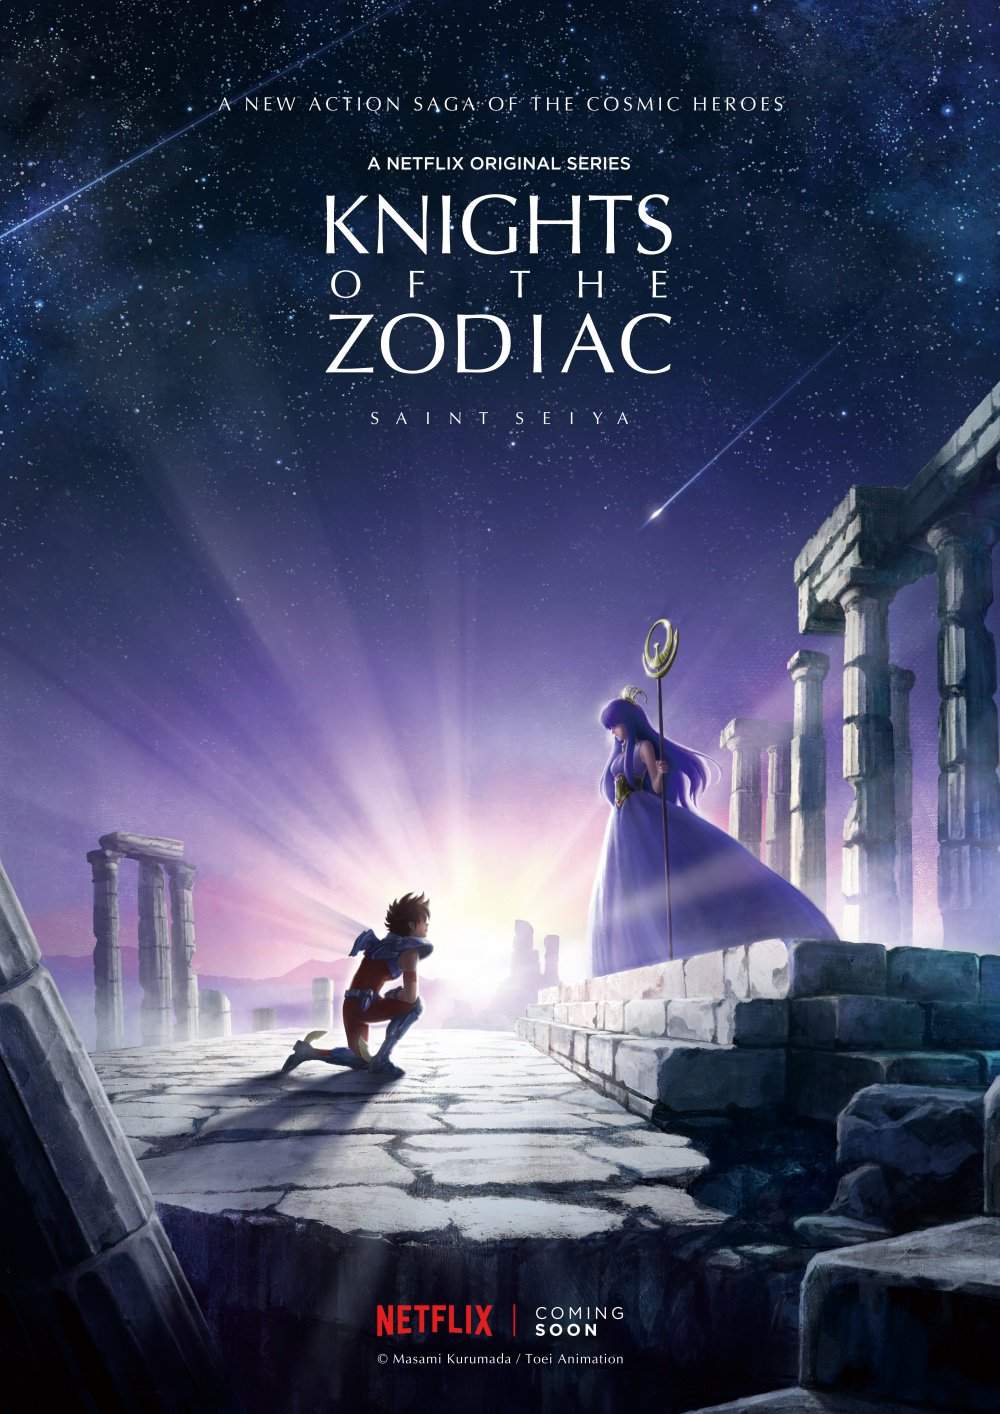 Cavaleiros do Zodíaco retornarão em série animada da Netflix Legiao_jEy0kWOSYth81UIbdiK3CD9cAo62ulwNfp7LGqMVxr